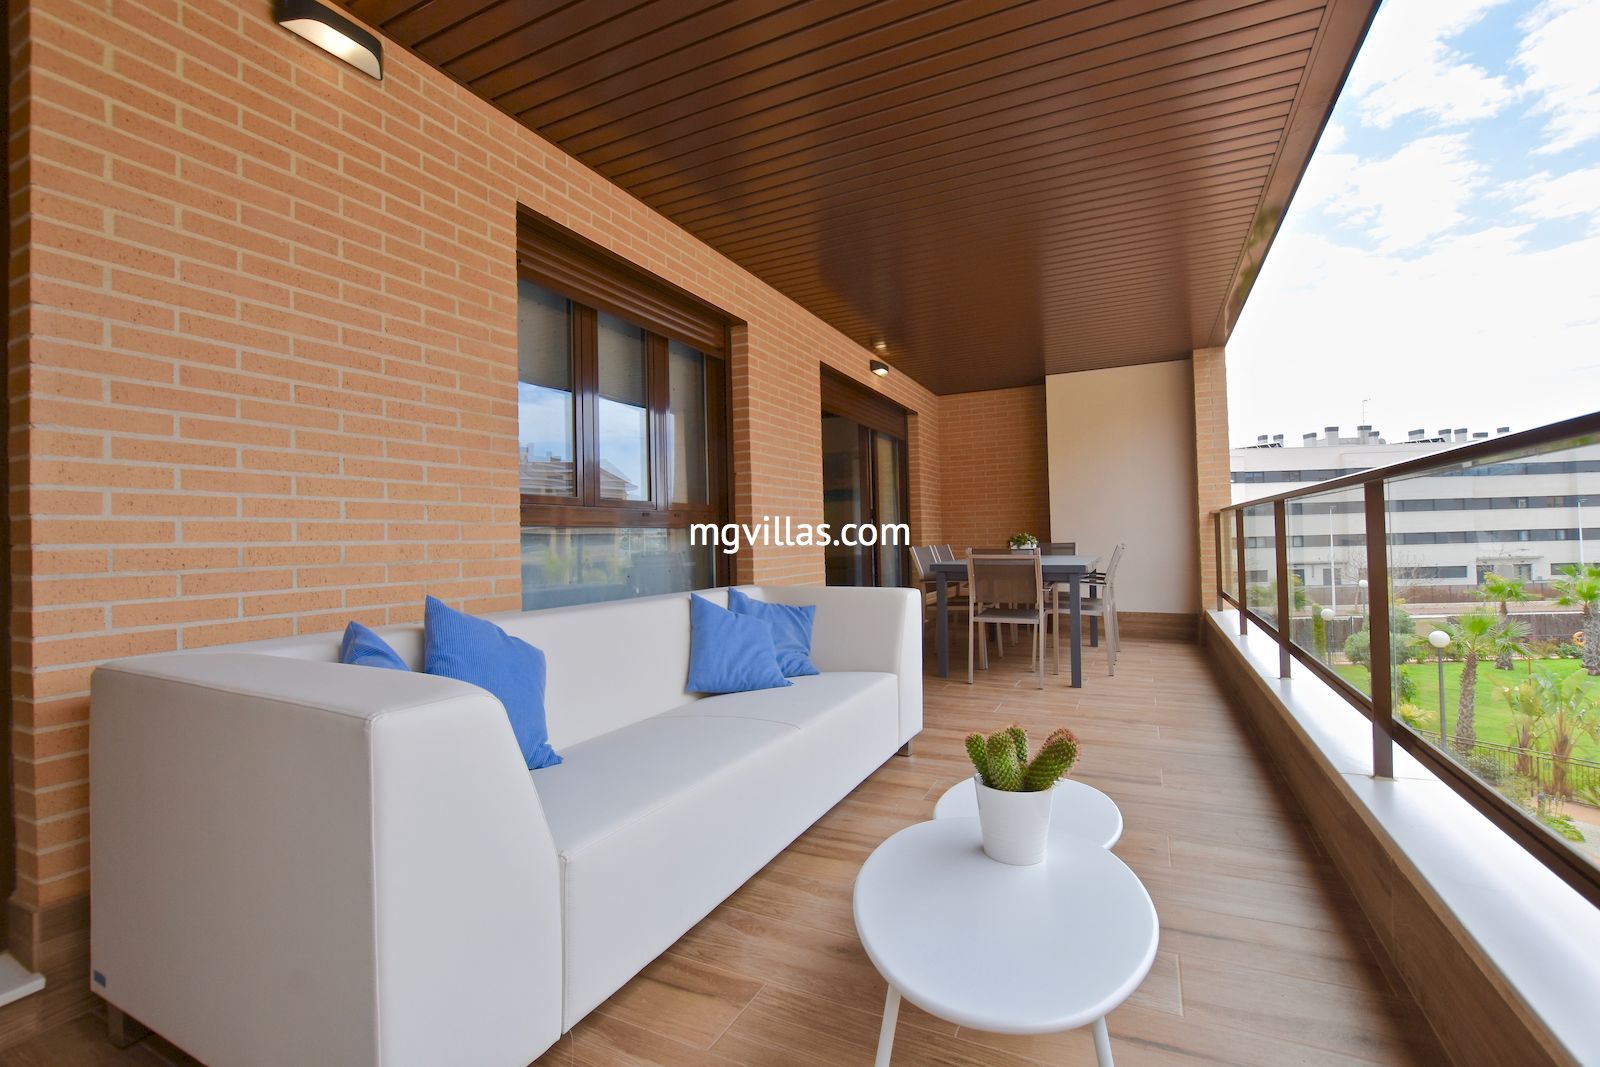 Apartamento en el Arenal - Javea - Alicante - Costa Blanca